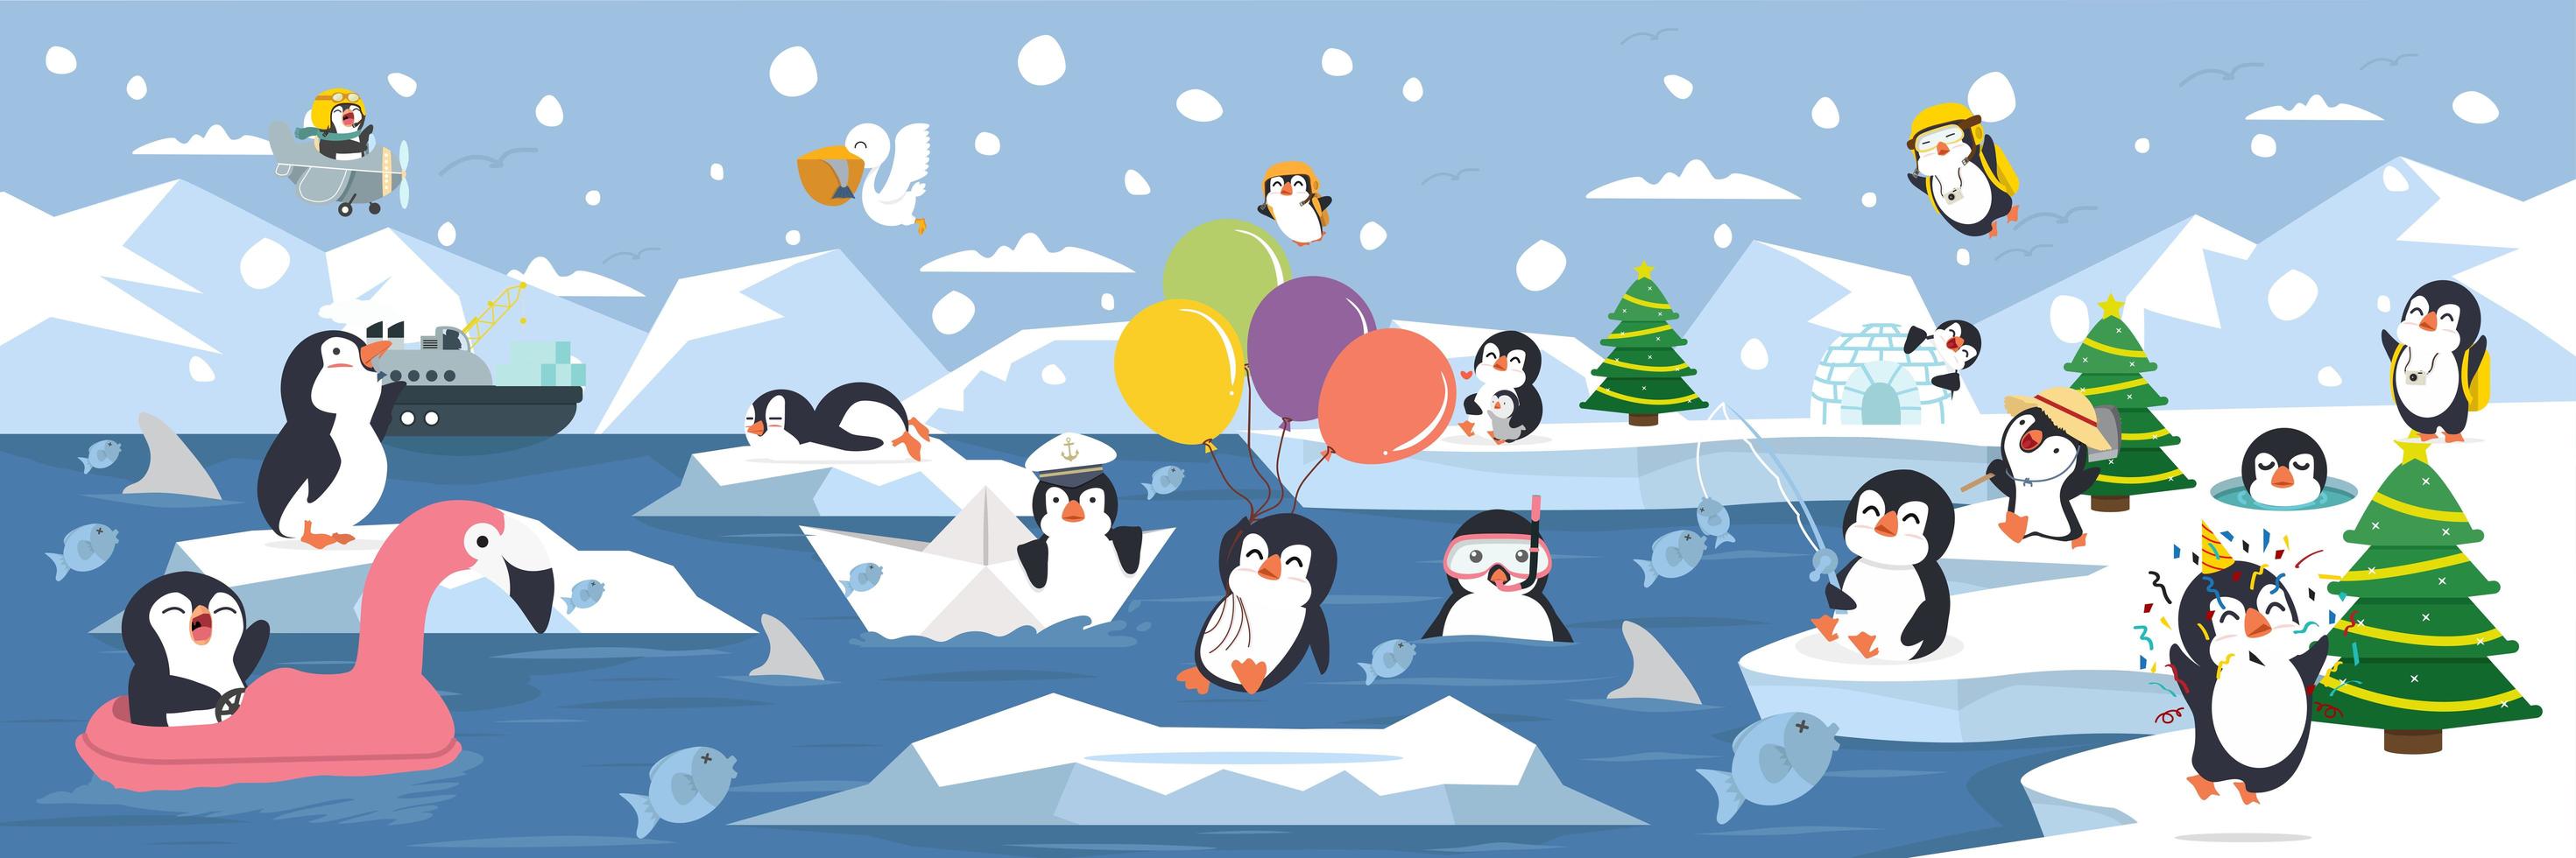 famille de pingouins s'amusant sur le fond de paysage arctique vecteur